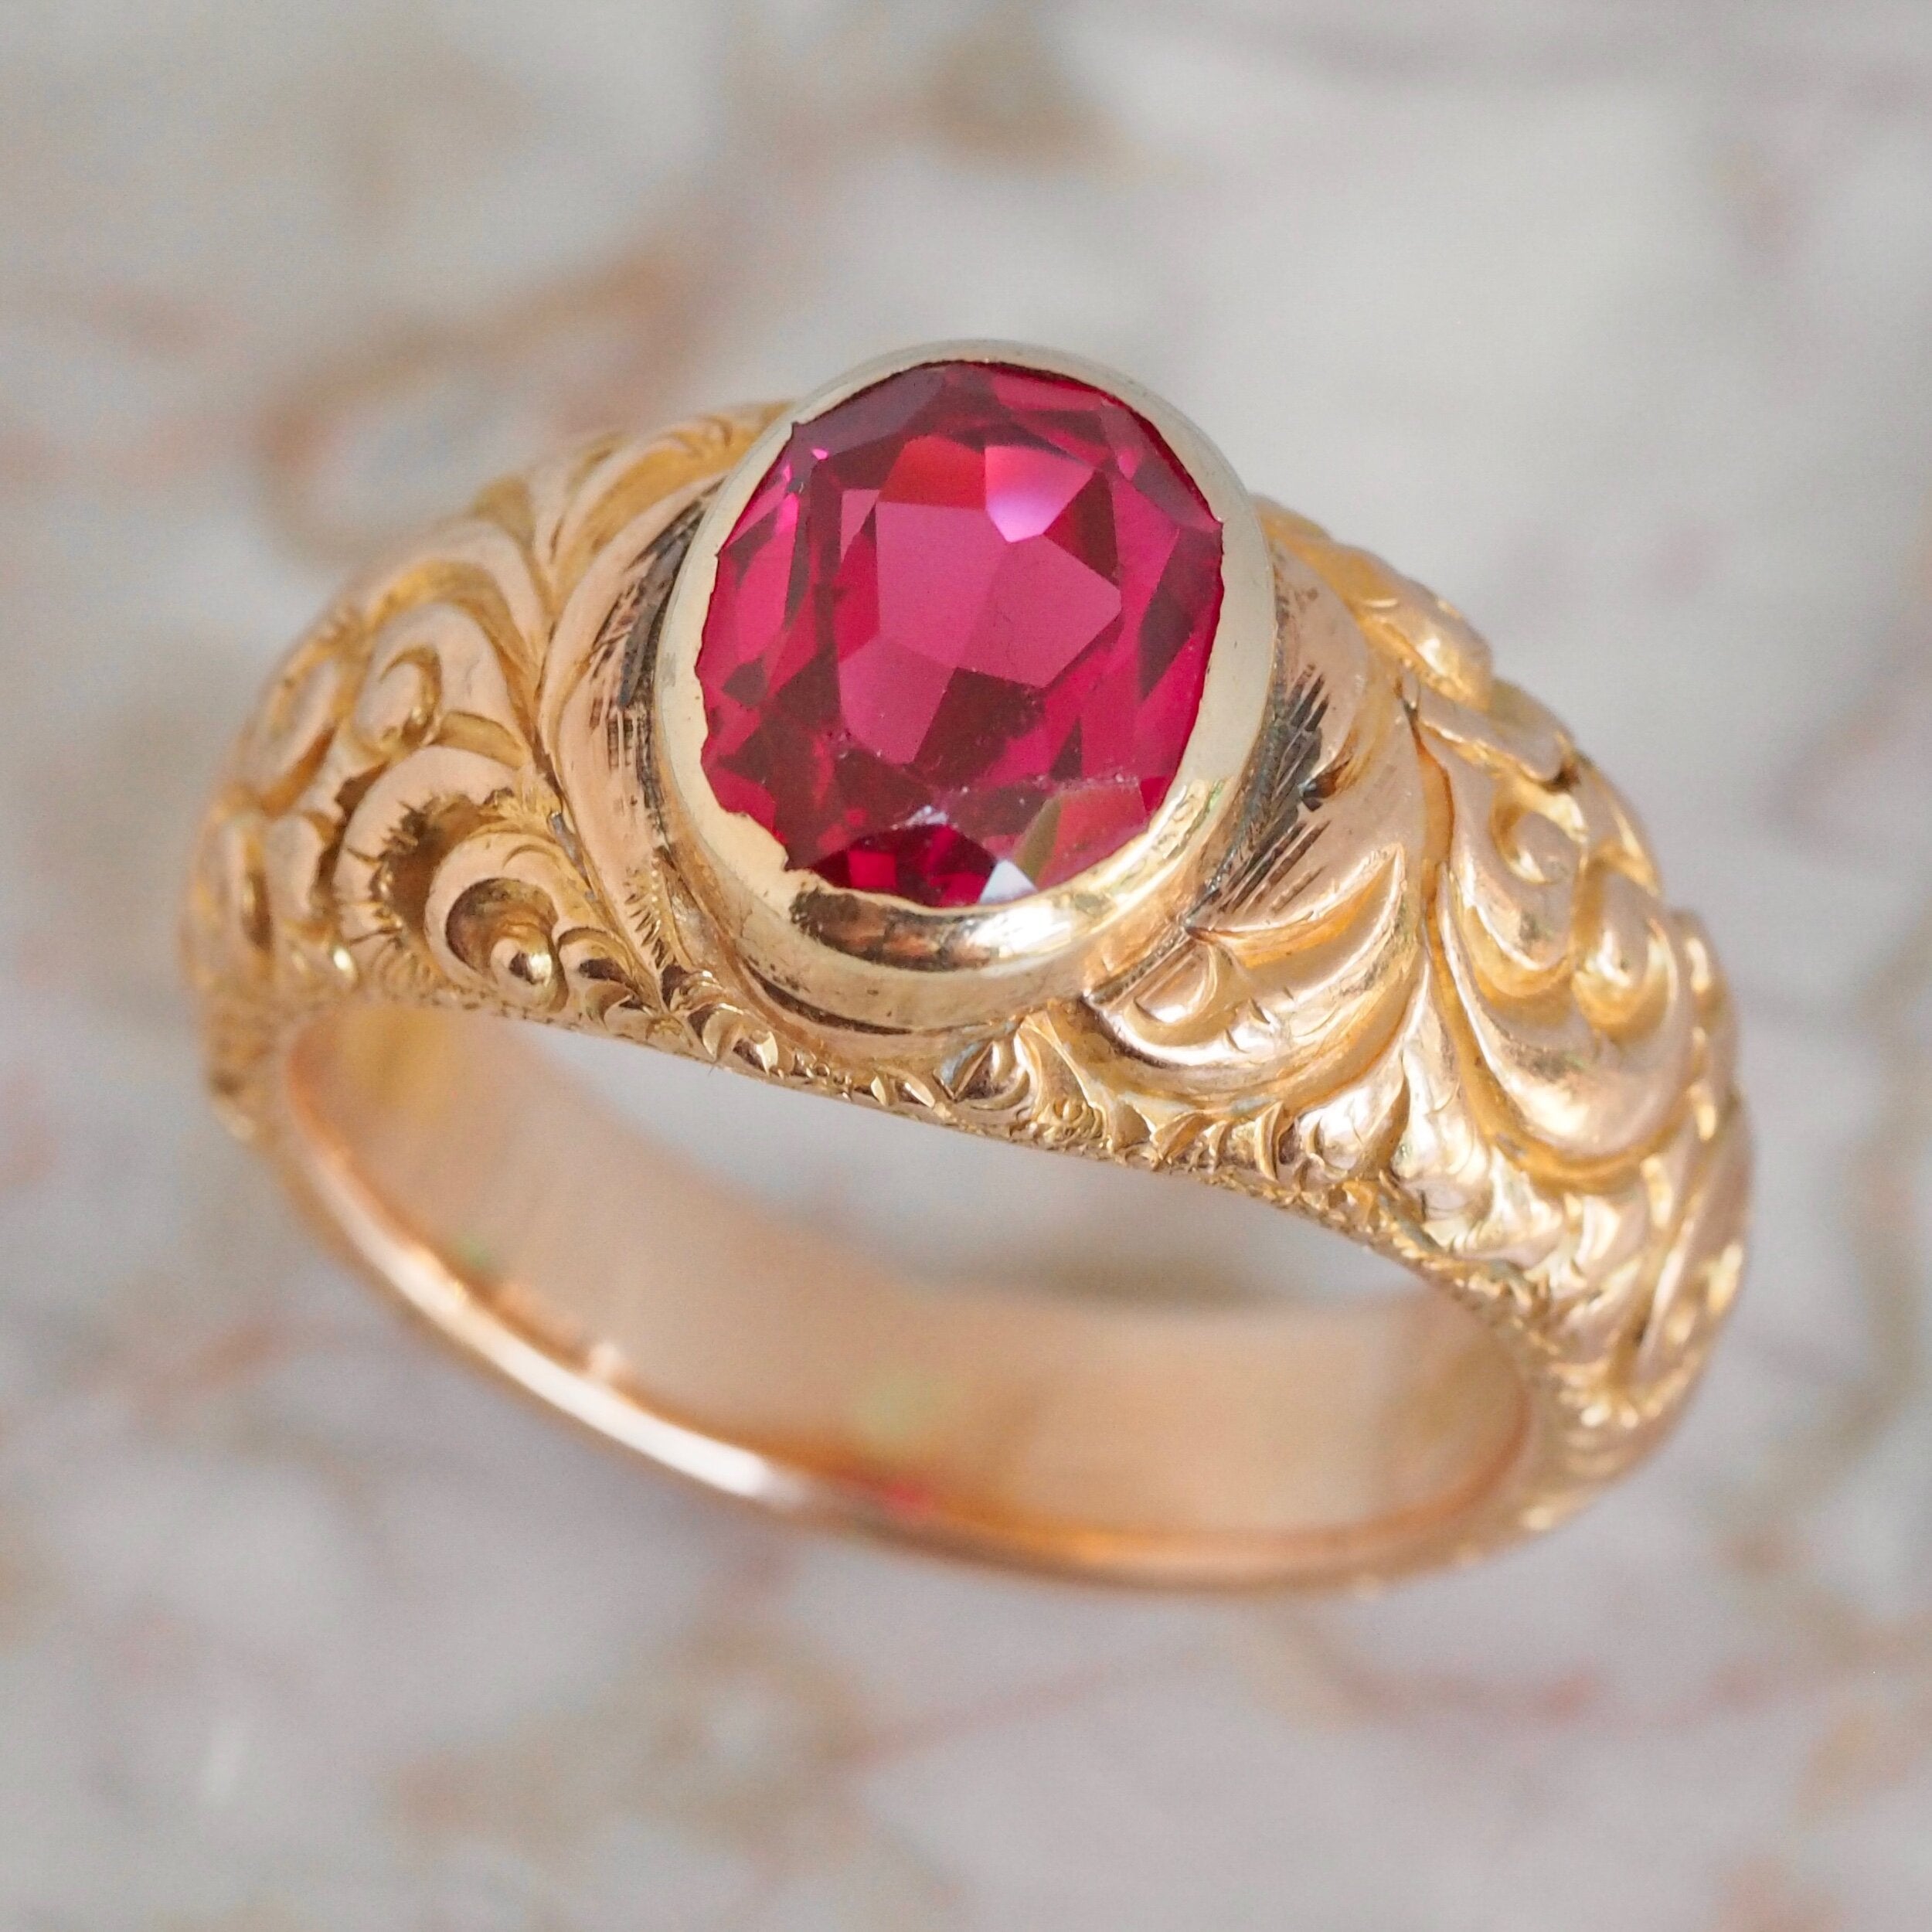 Antique Victorian Engraved 14k Gold Bezel Set Ruby Ring